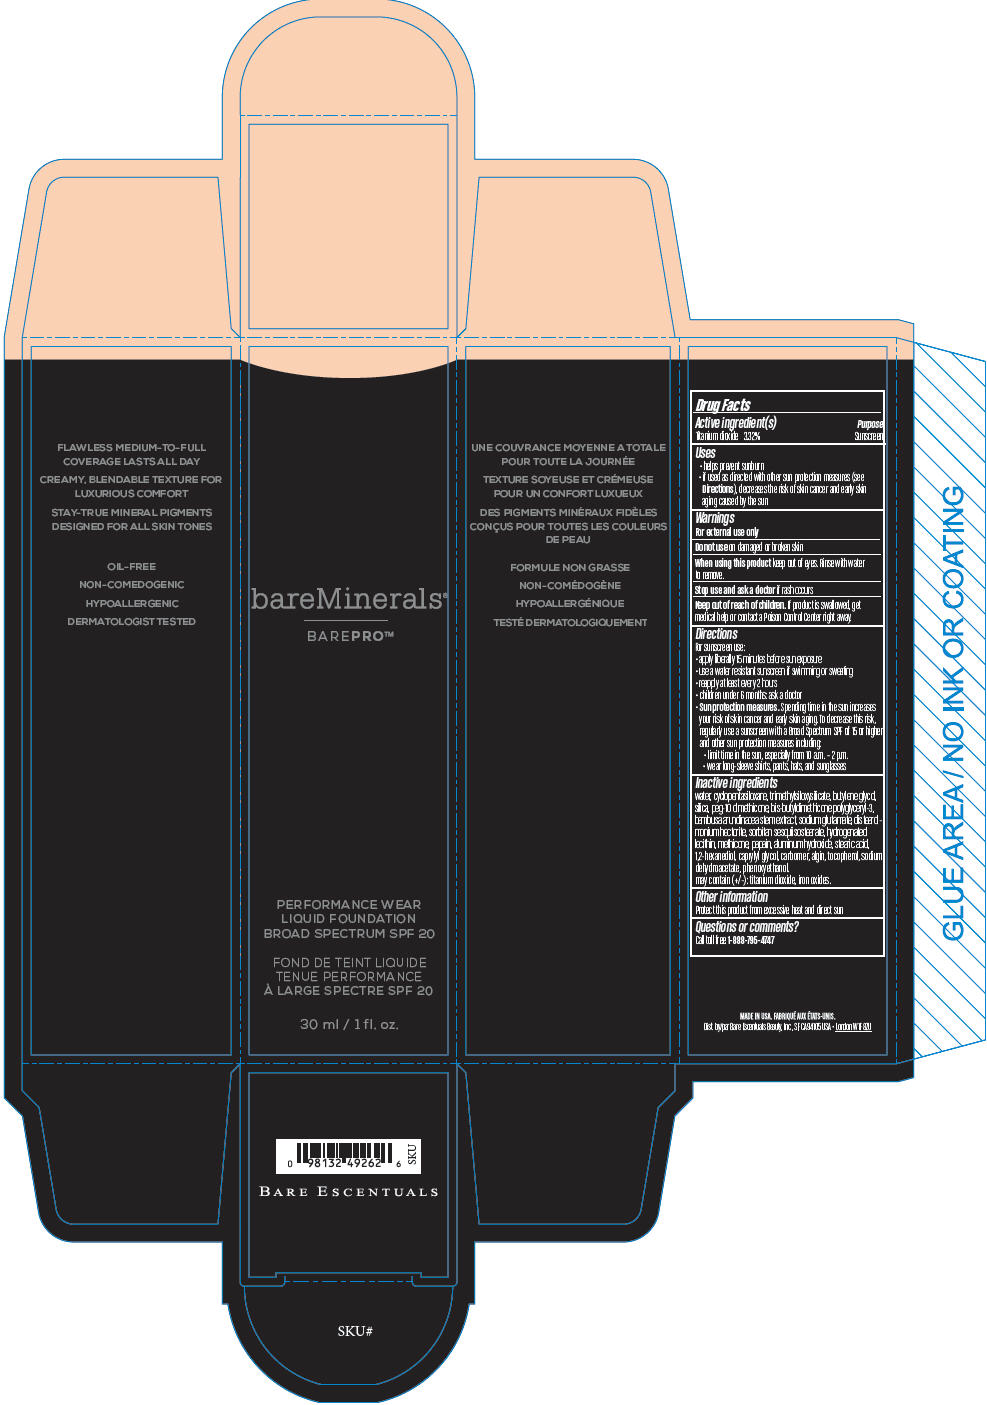 PRINCIPAL DISPLAY PANEL - 30 ml Bottle Carton - Cardamom 23